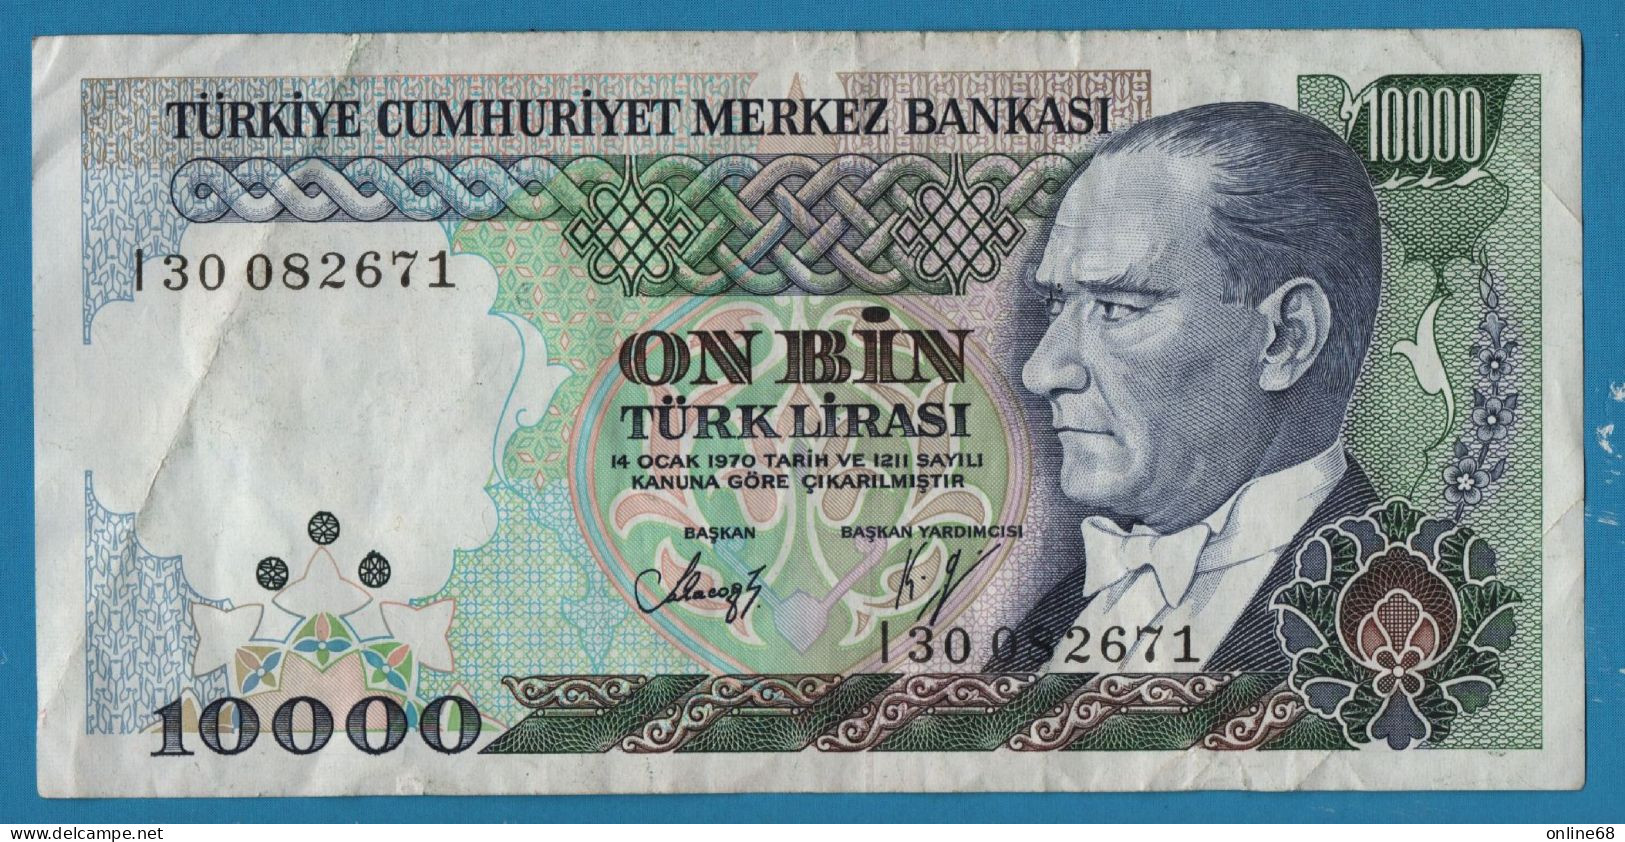 TURKEY 10.000 LIRASI L. 1970 # I300822671 P# 200 Atatürk  Architect Mımar Sinan - Turquie